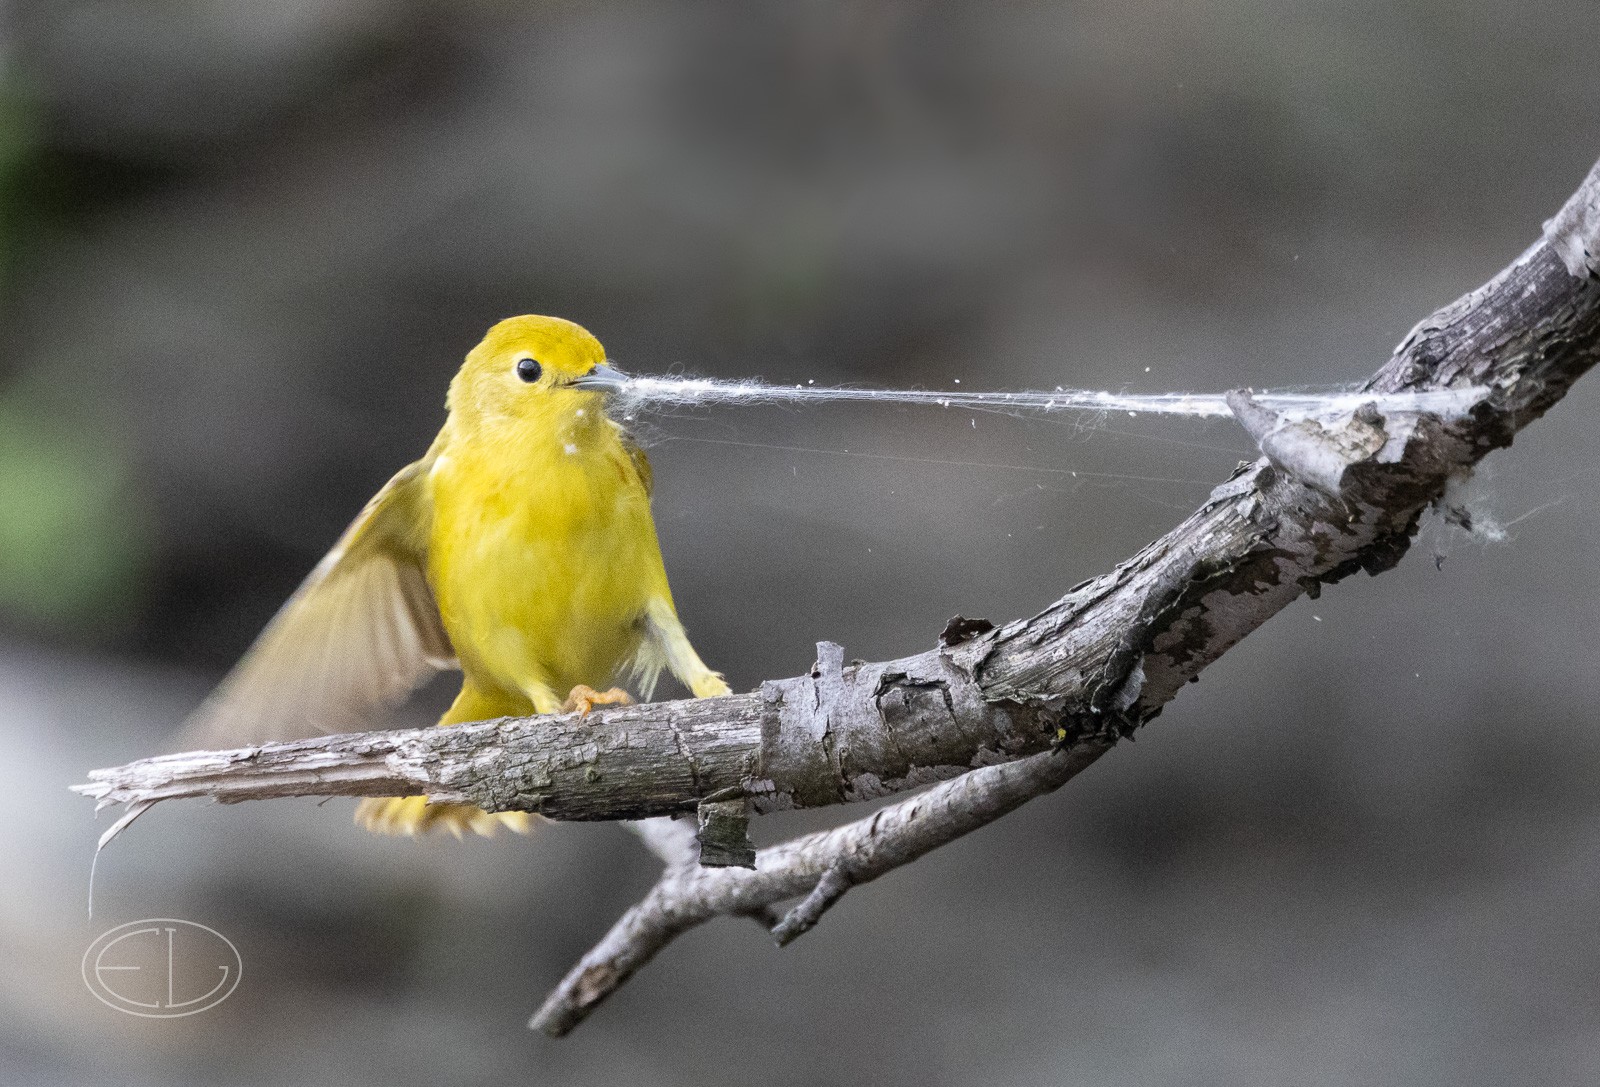 R7_D1245 Yellow Warbler.jpg